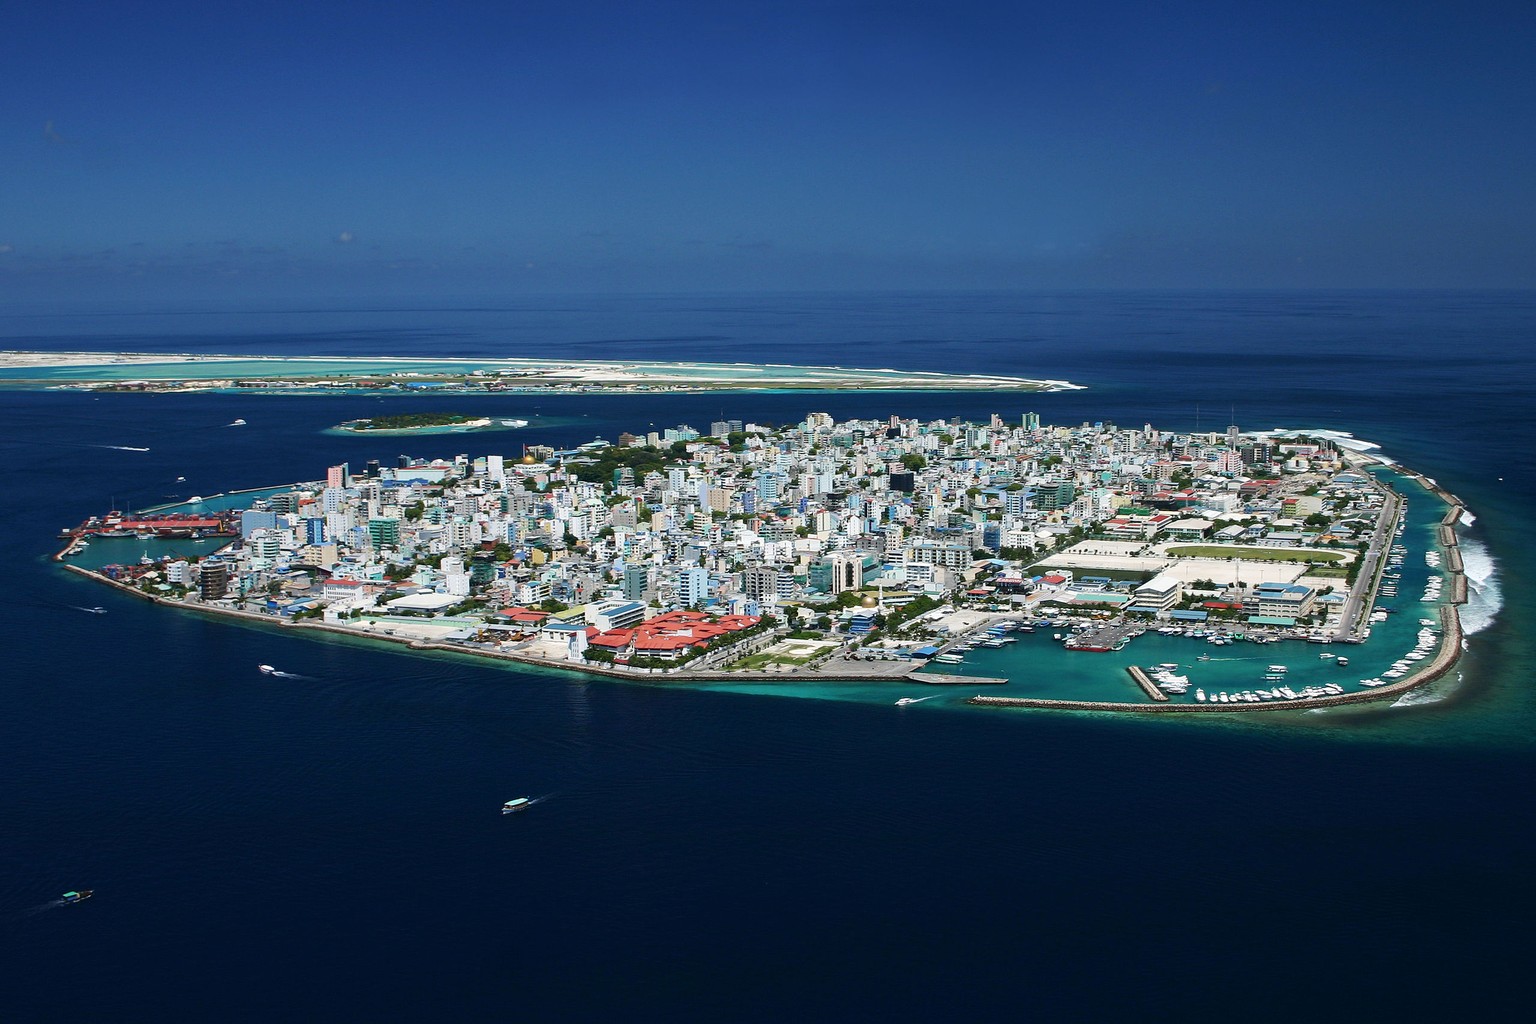 Malé, die Hauptstadt der Malediven. Das Land zählt rund 330'000 Einwohner.